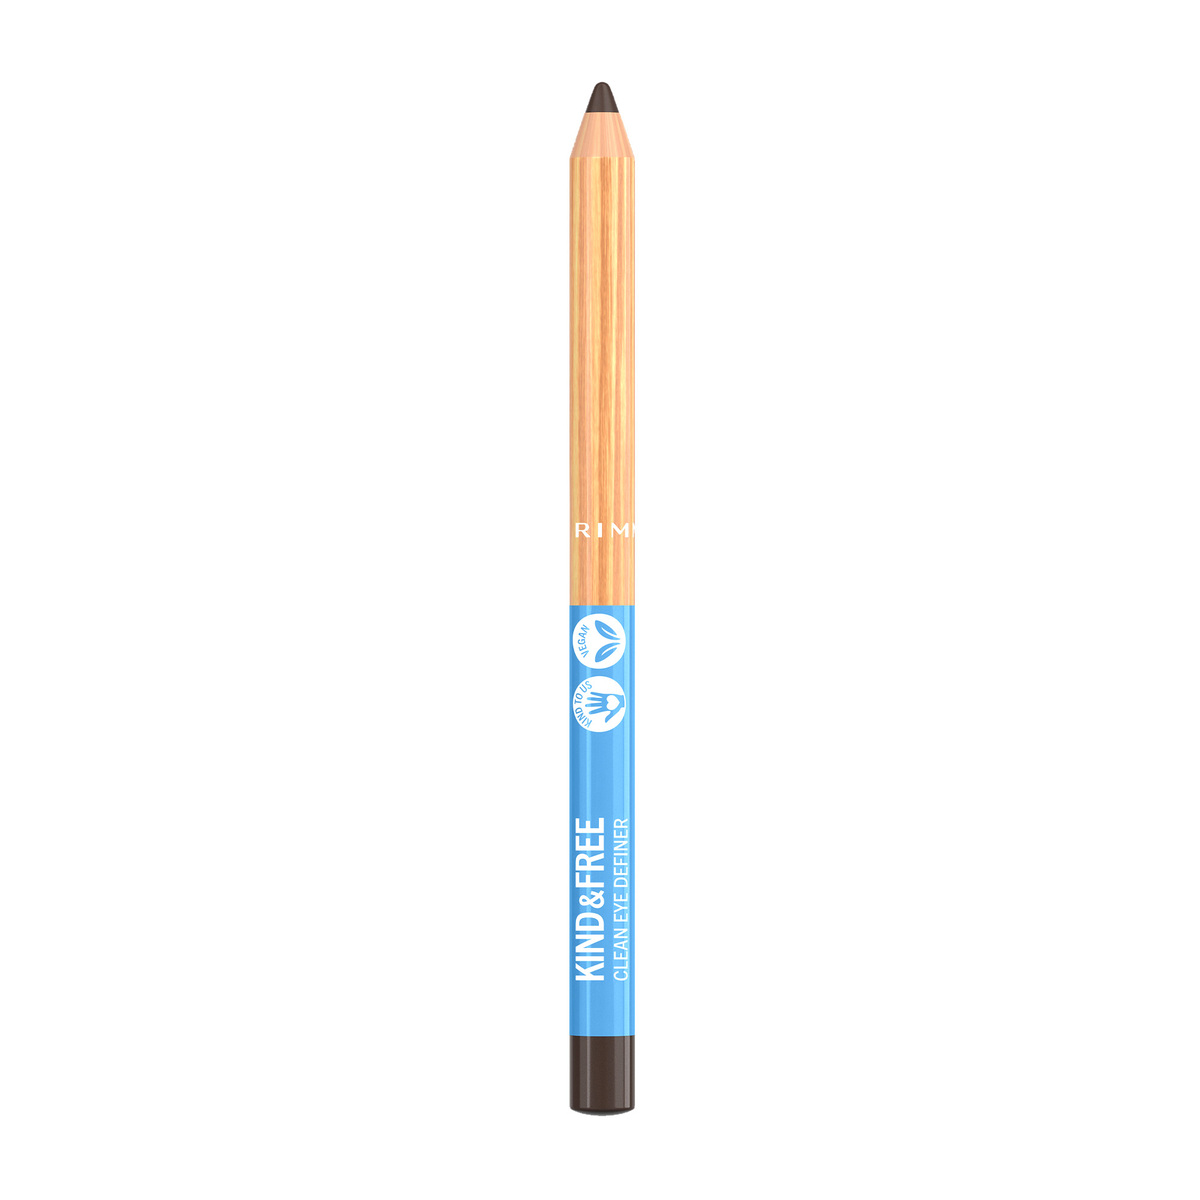 Rimmel London Kind & Free Clean Eyeliner Pencil, 002 Pecan Brown, 1.1 g